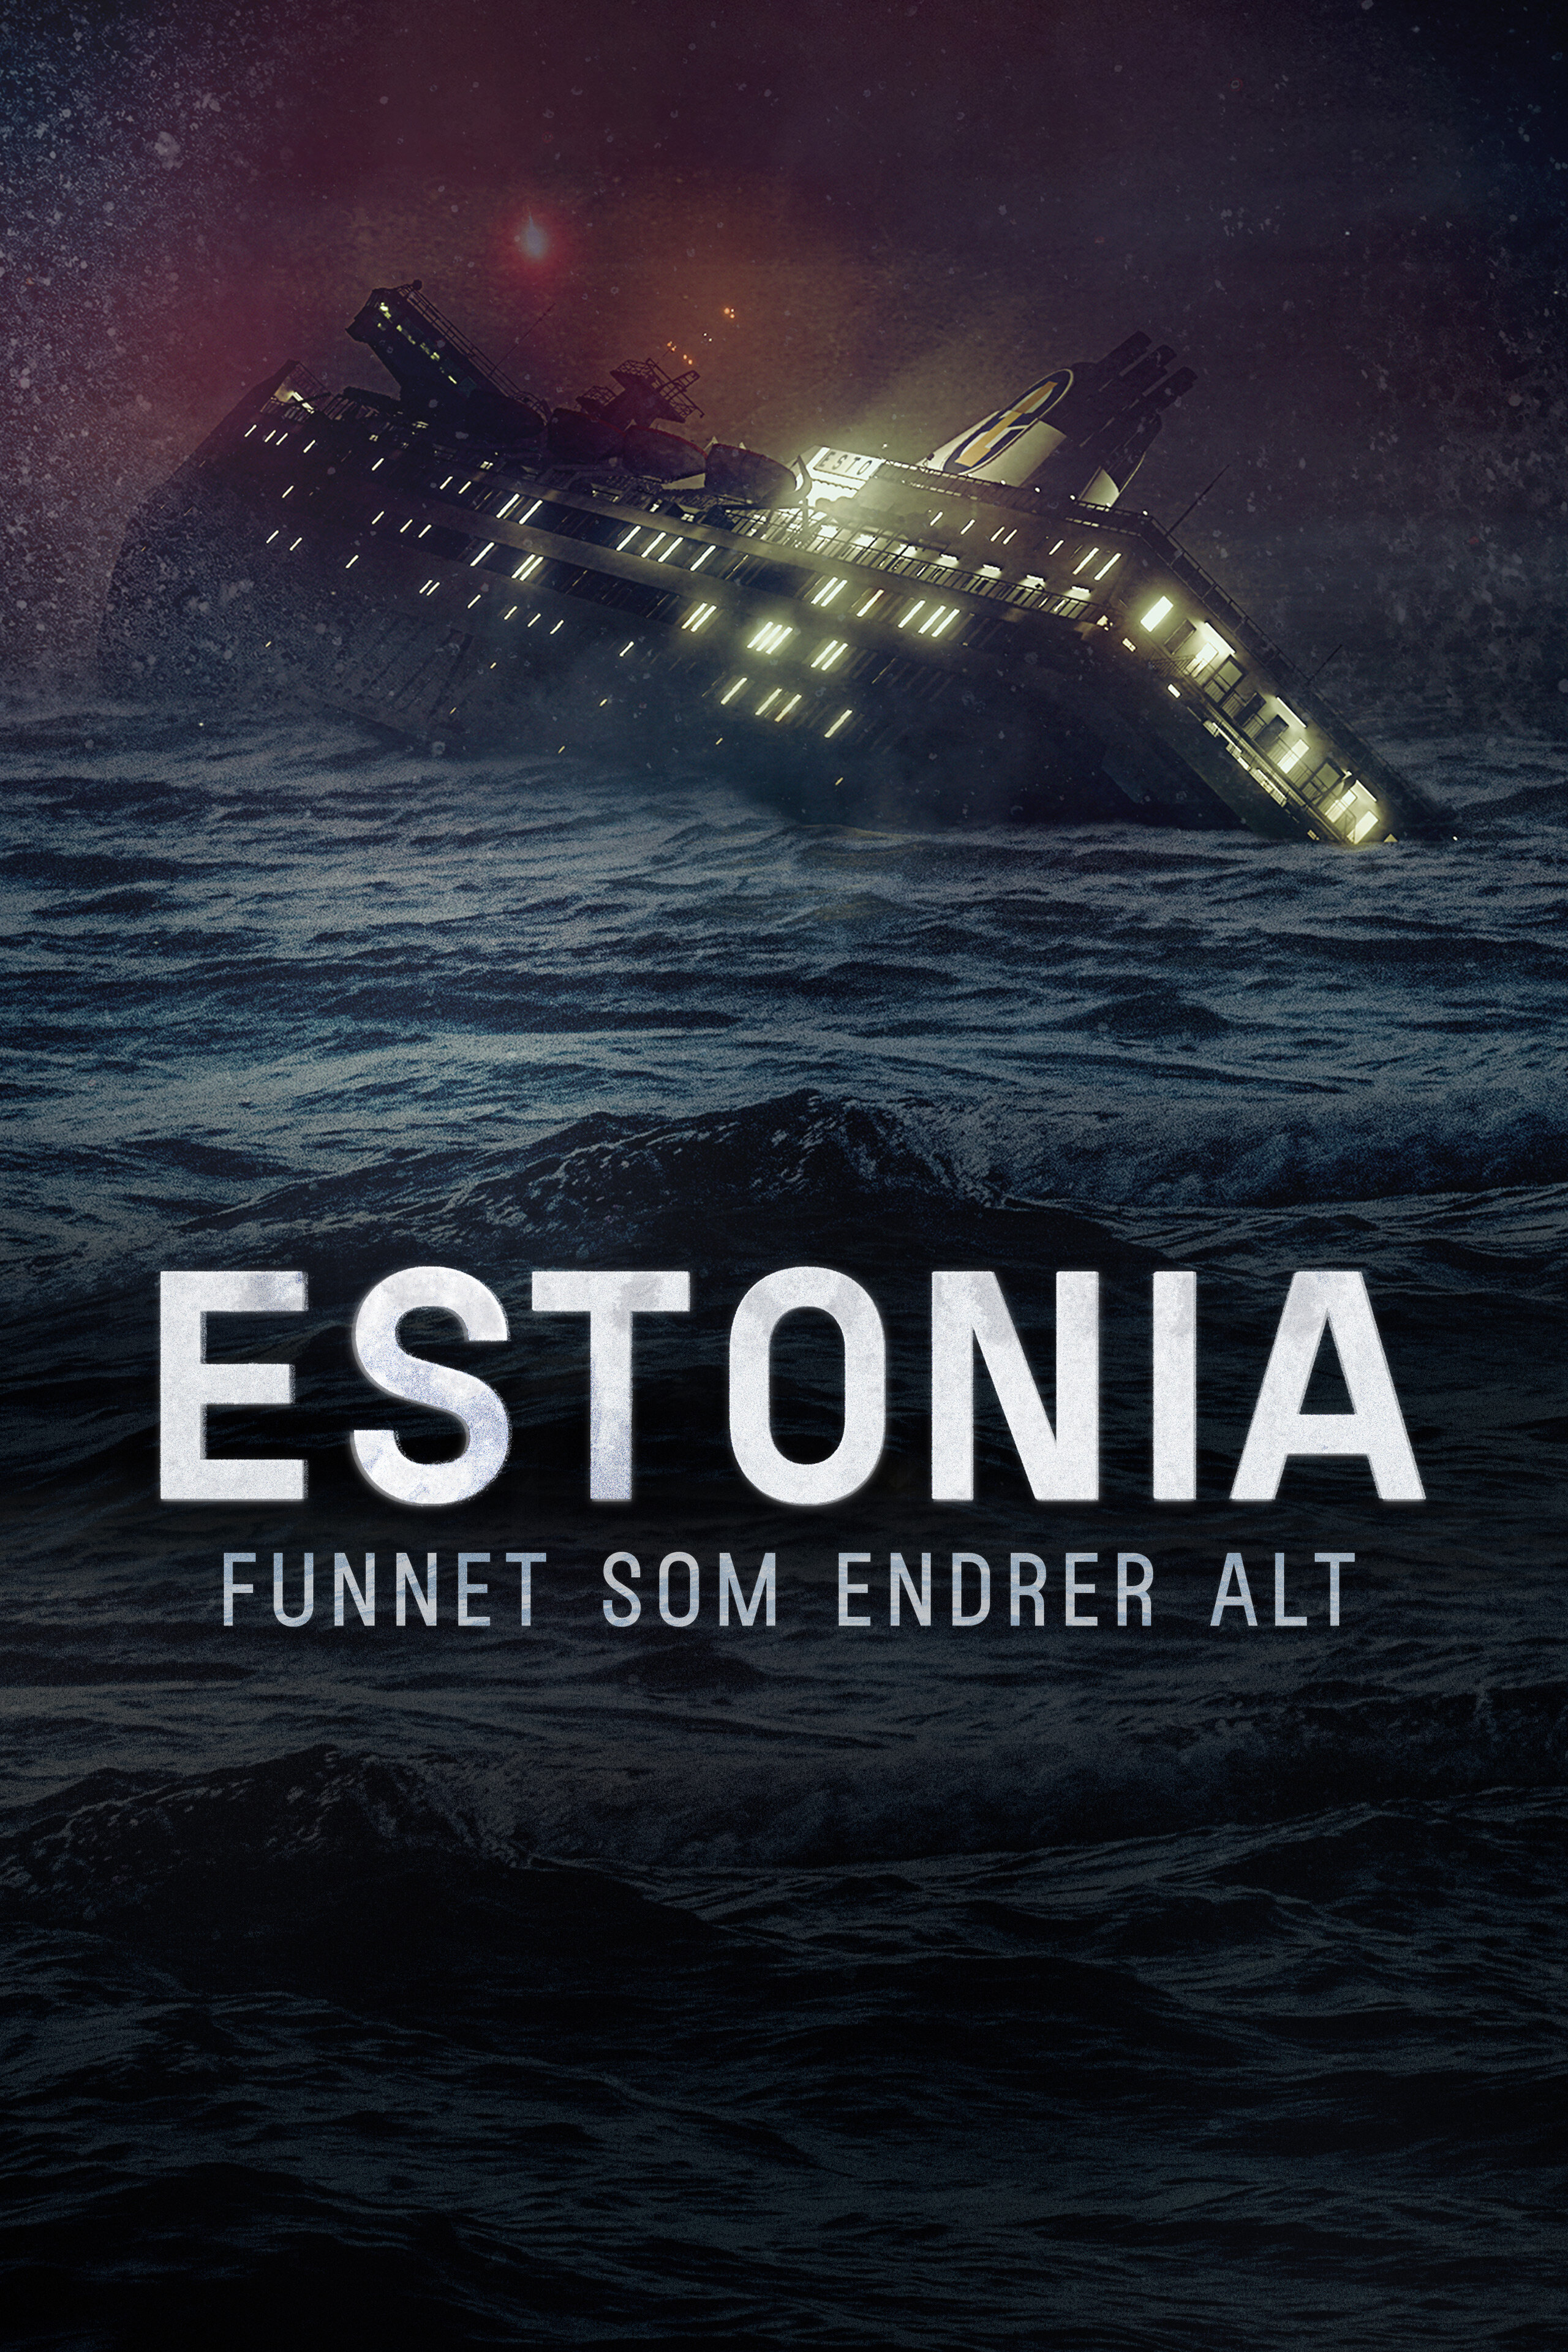 Estonia - funnet som endrer alt ne zaman